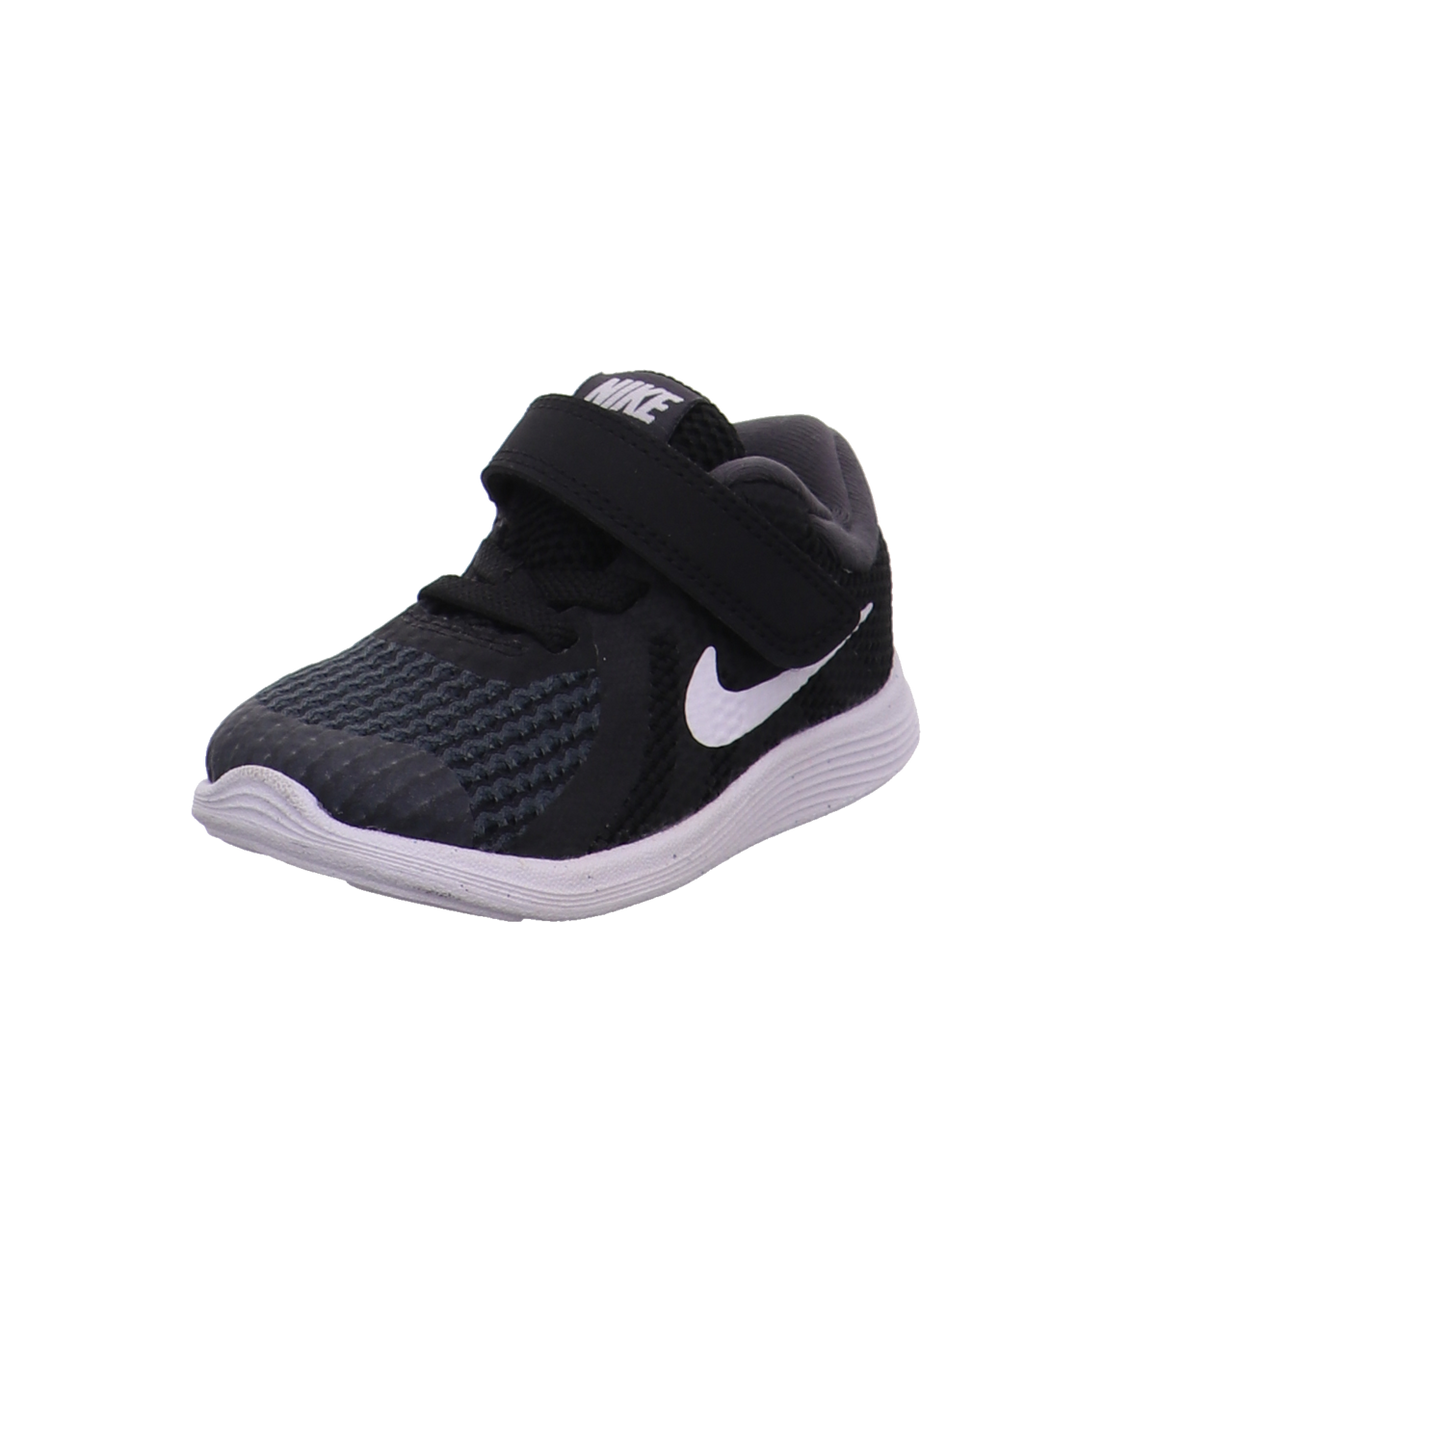 Nike Krabbel- und Lauflernschuhe schwarz-weiß Bild1